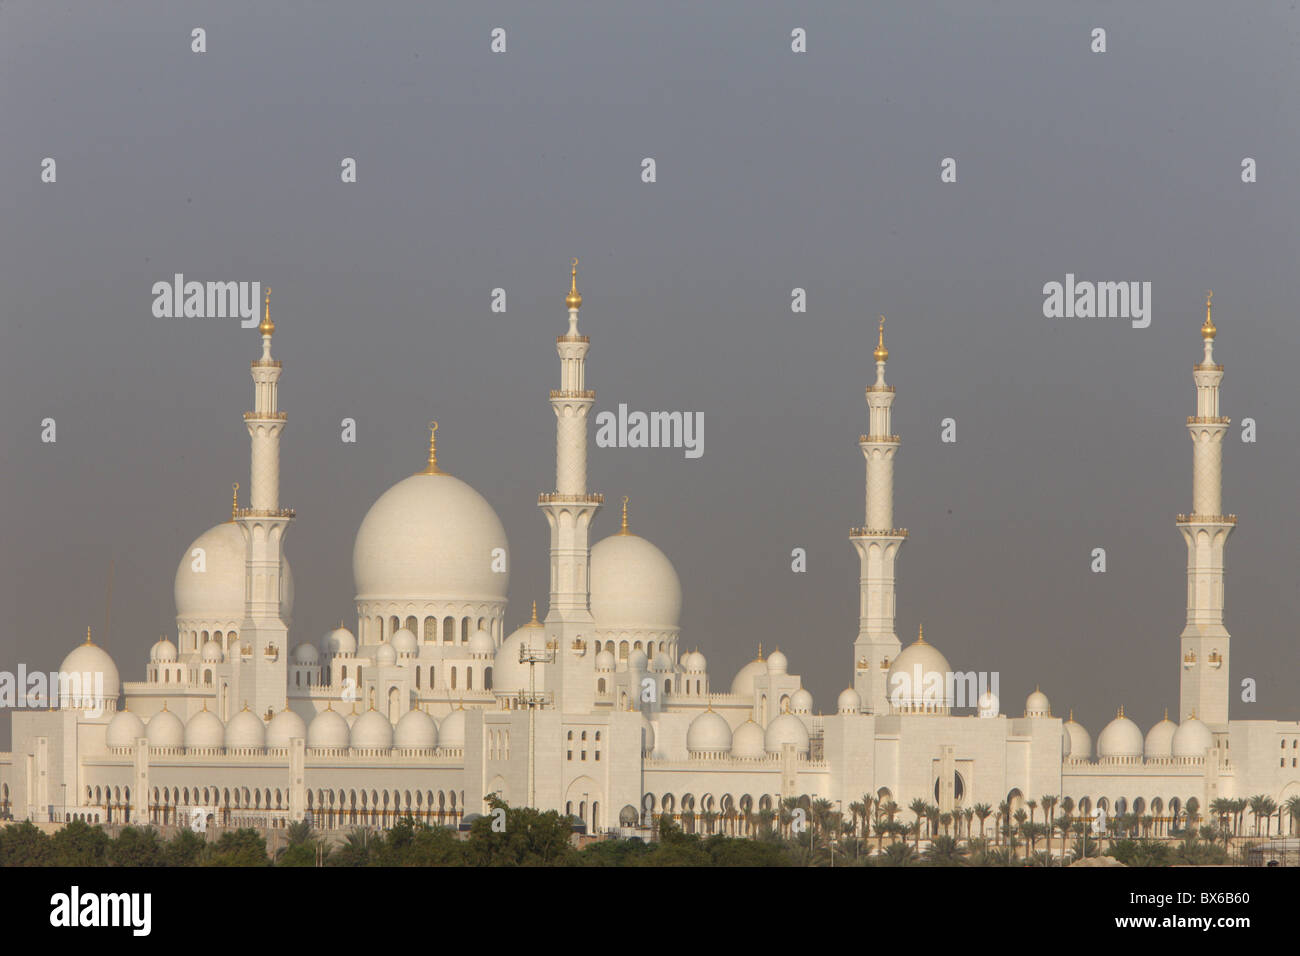 Grande Mosquée de Sheikh Zayed, la plus grande mosquée de l'UAE et l'une des 10 plus grandes mosquées du monde, Abu Dhabi, UAE Banque D'Images